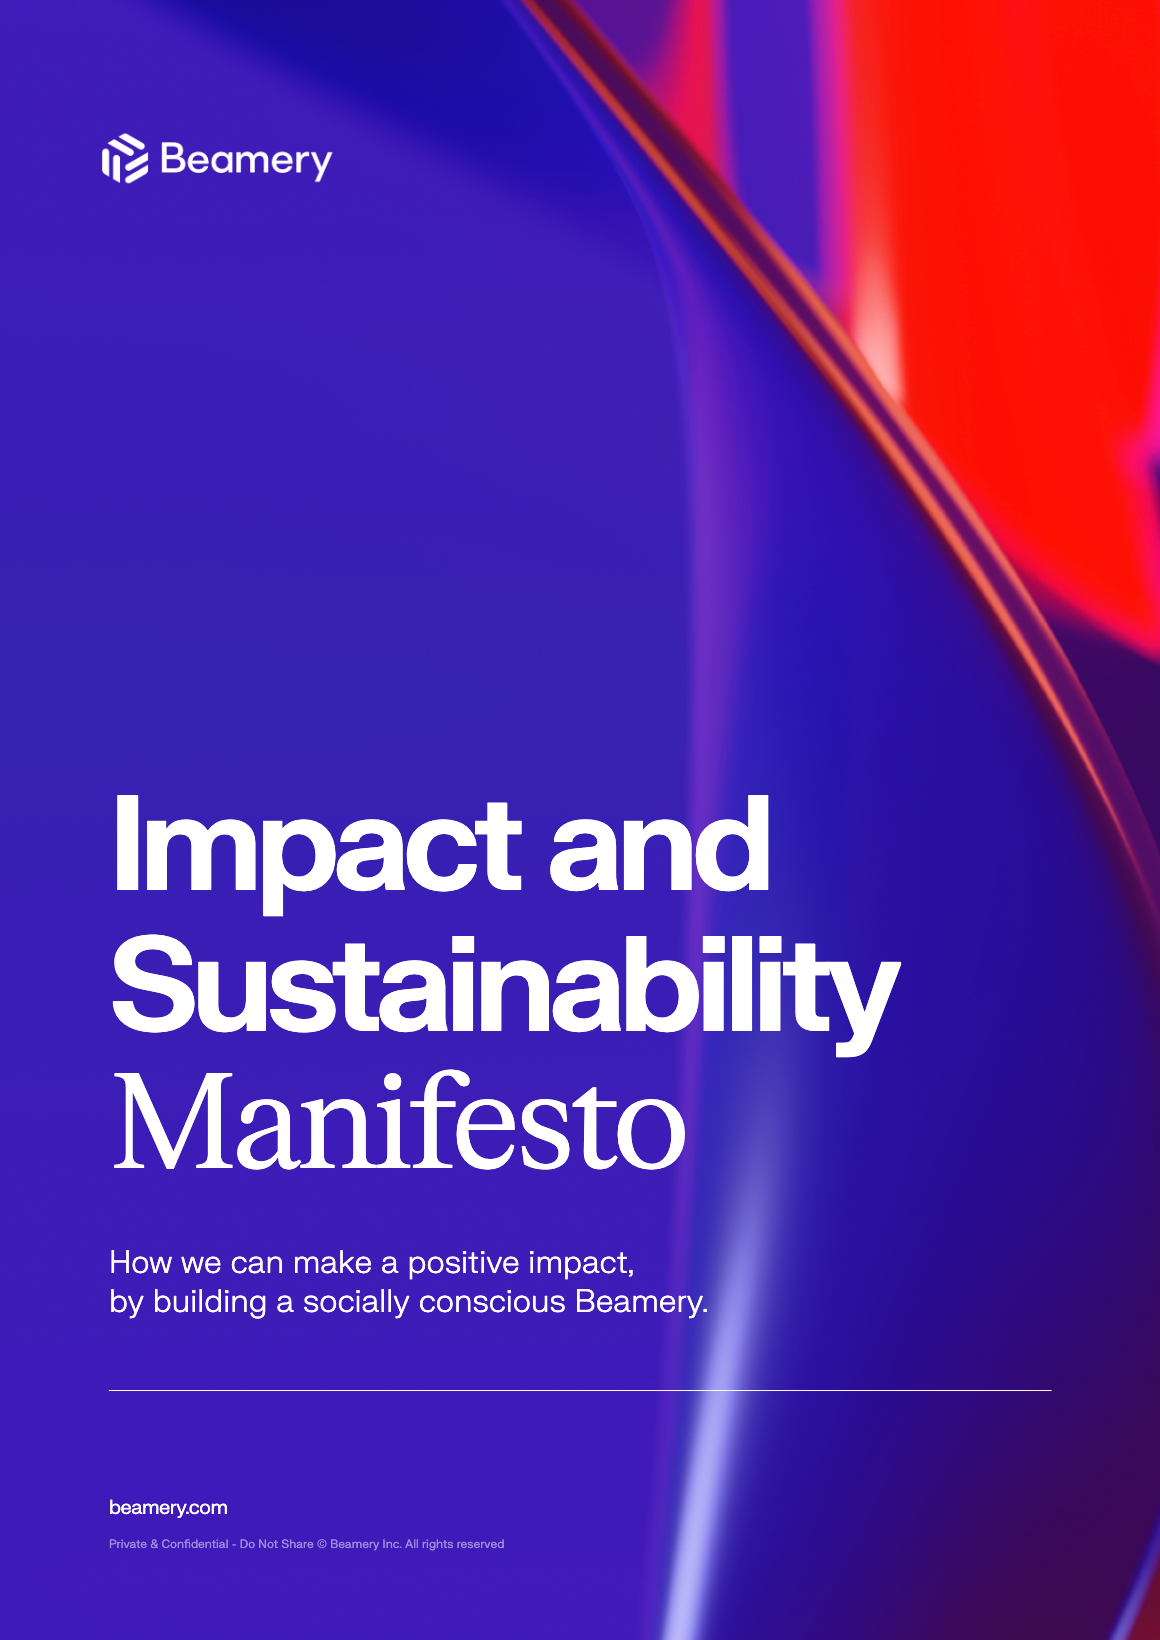 Screenshot of Beamery's Impact and Sustainability Manifesto